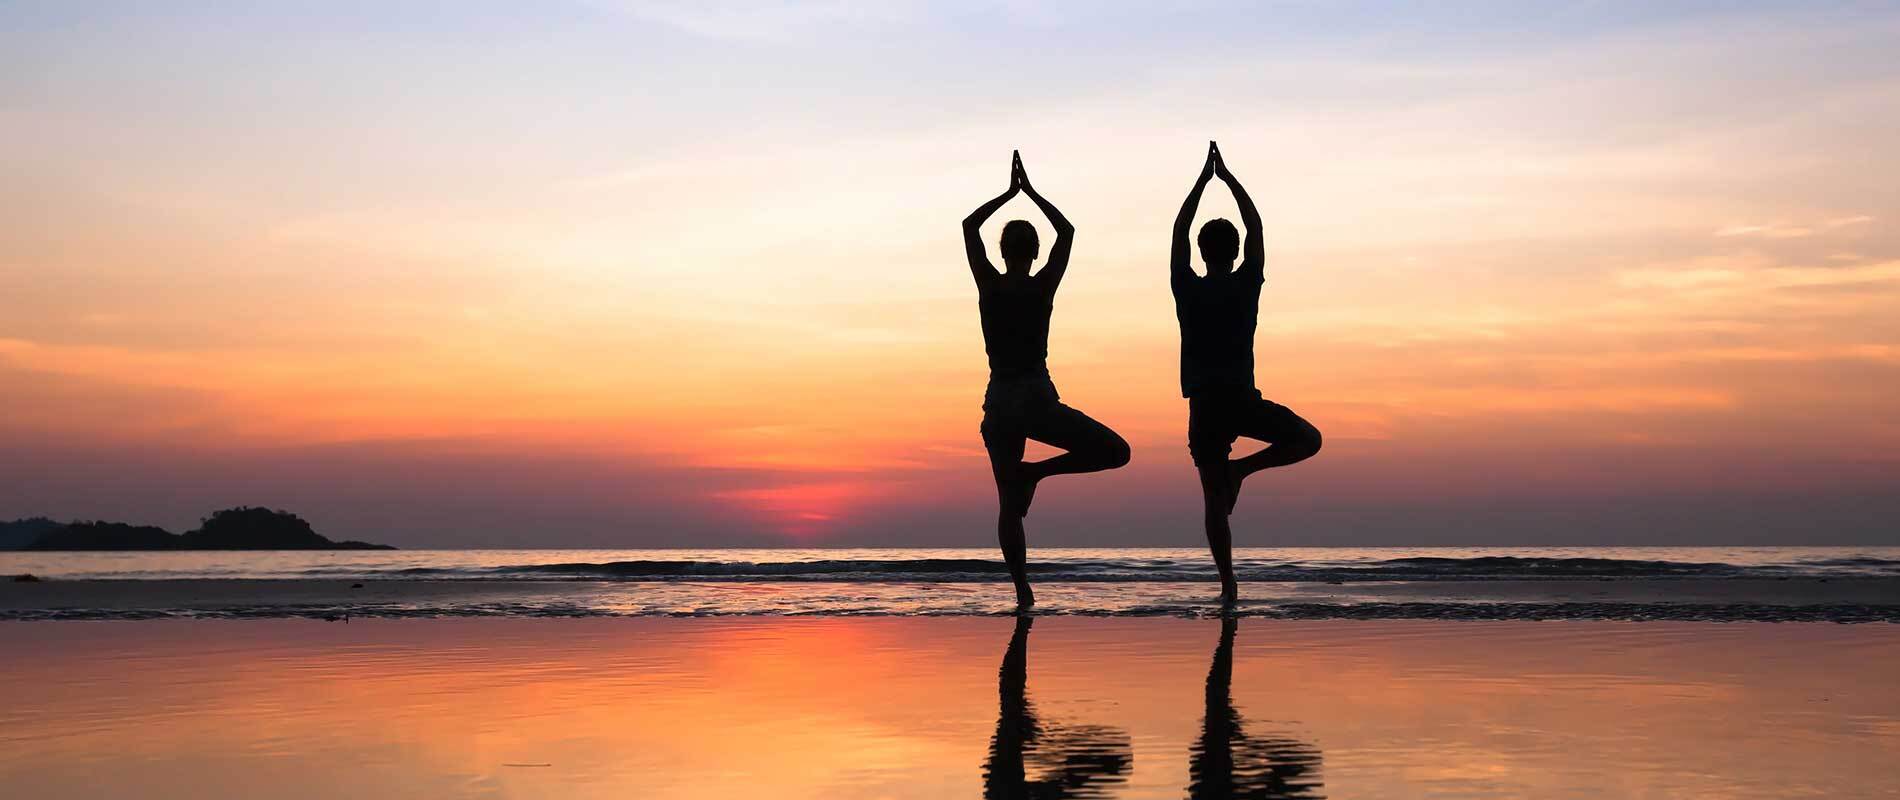 Yoga sunset photo | Yoga photography, Yoga poses photography, Beautiful yoga  poses